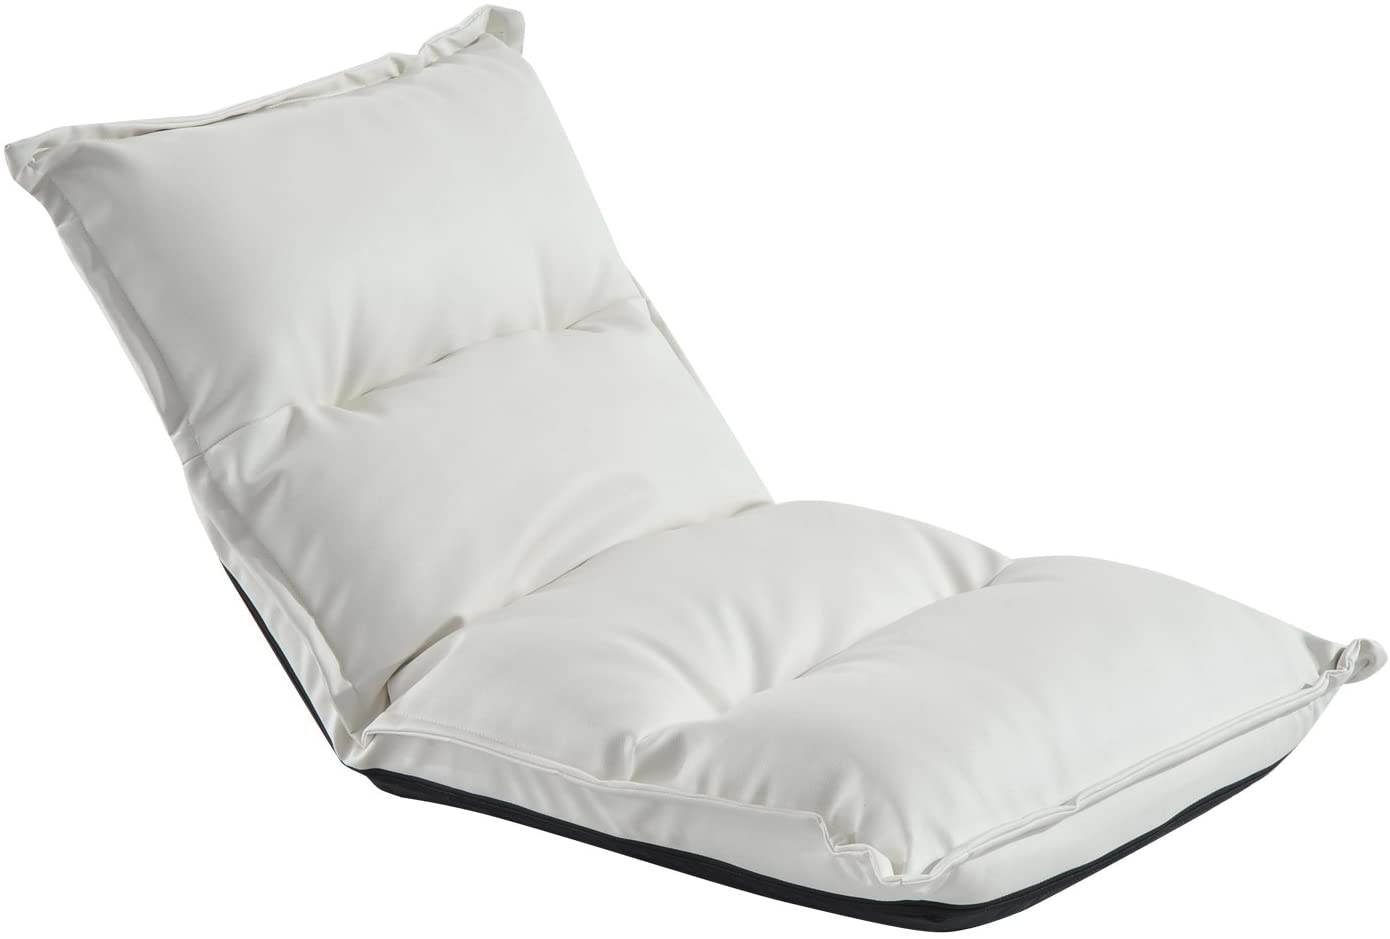 Homcom Folding Seat Cushion Stadium Cushion With Adjustable Backrest Black/